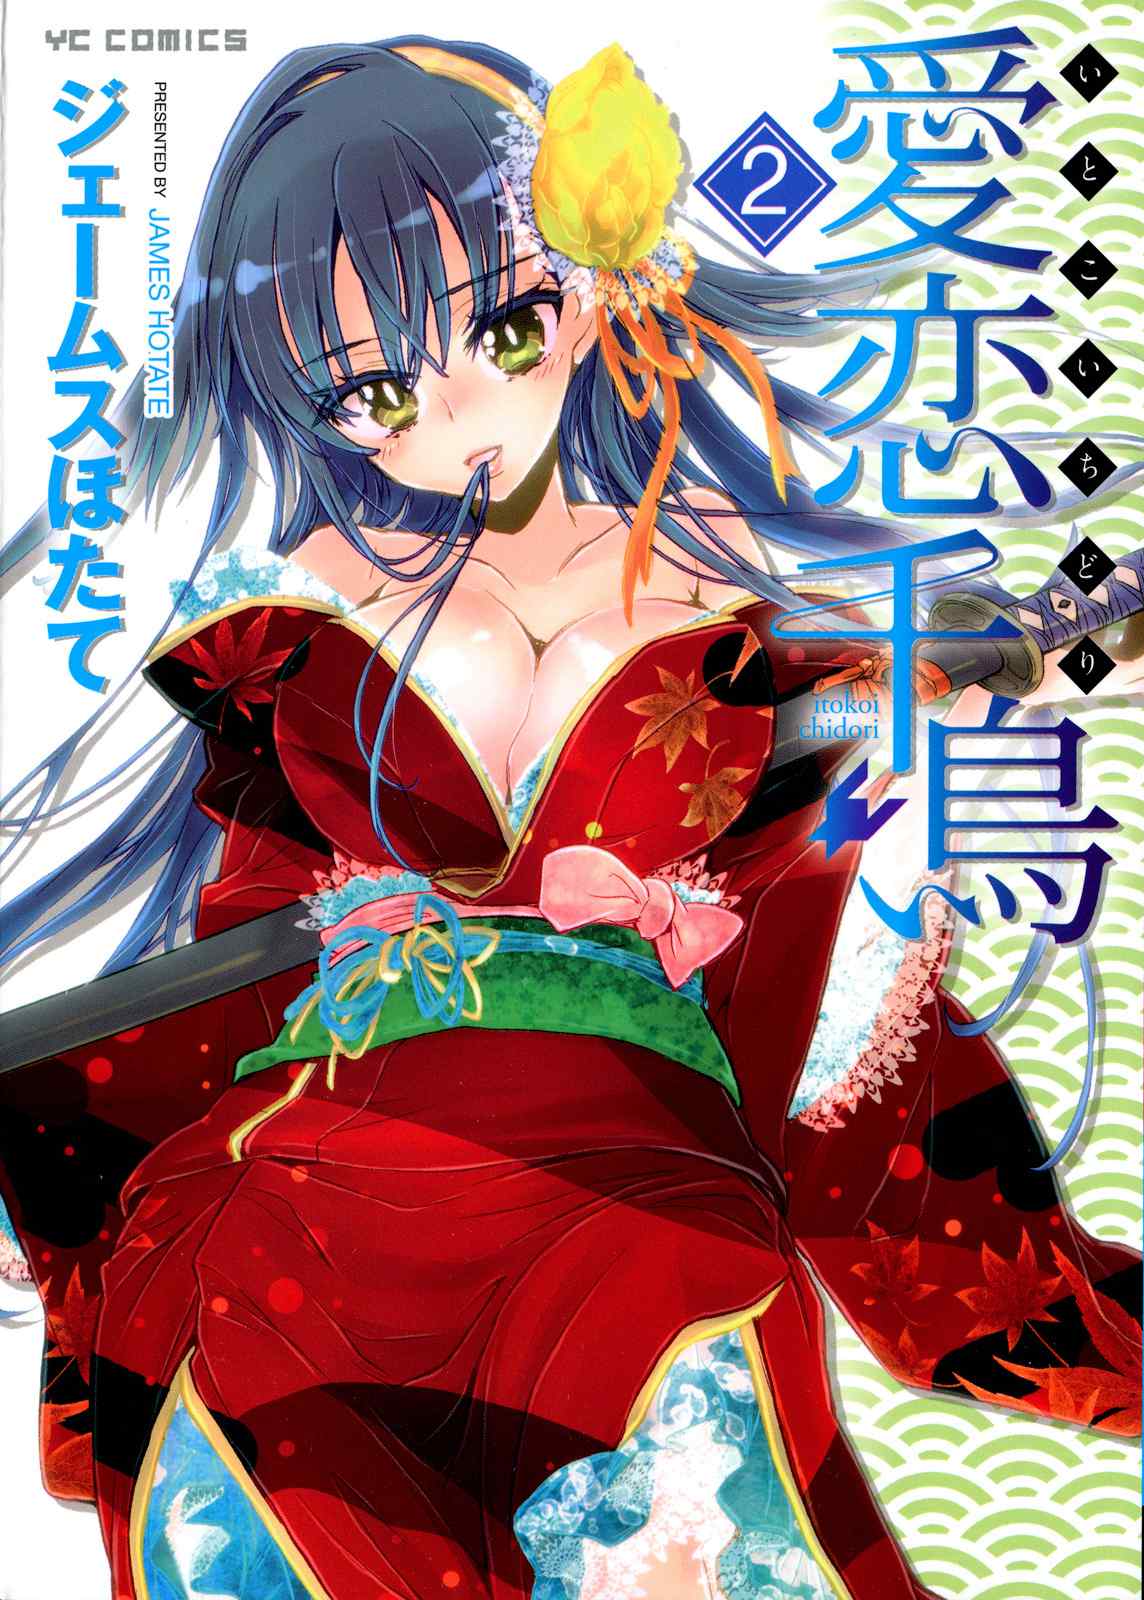 Reading Itokoi Chidori [ecchi] Hentai 2 Volume 2 [end